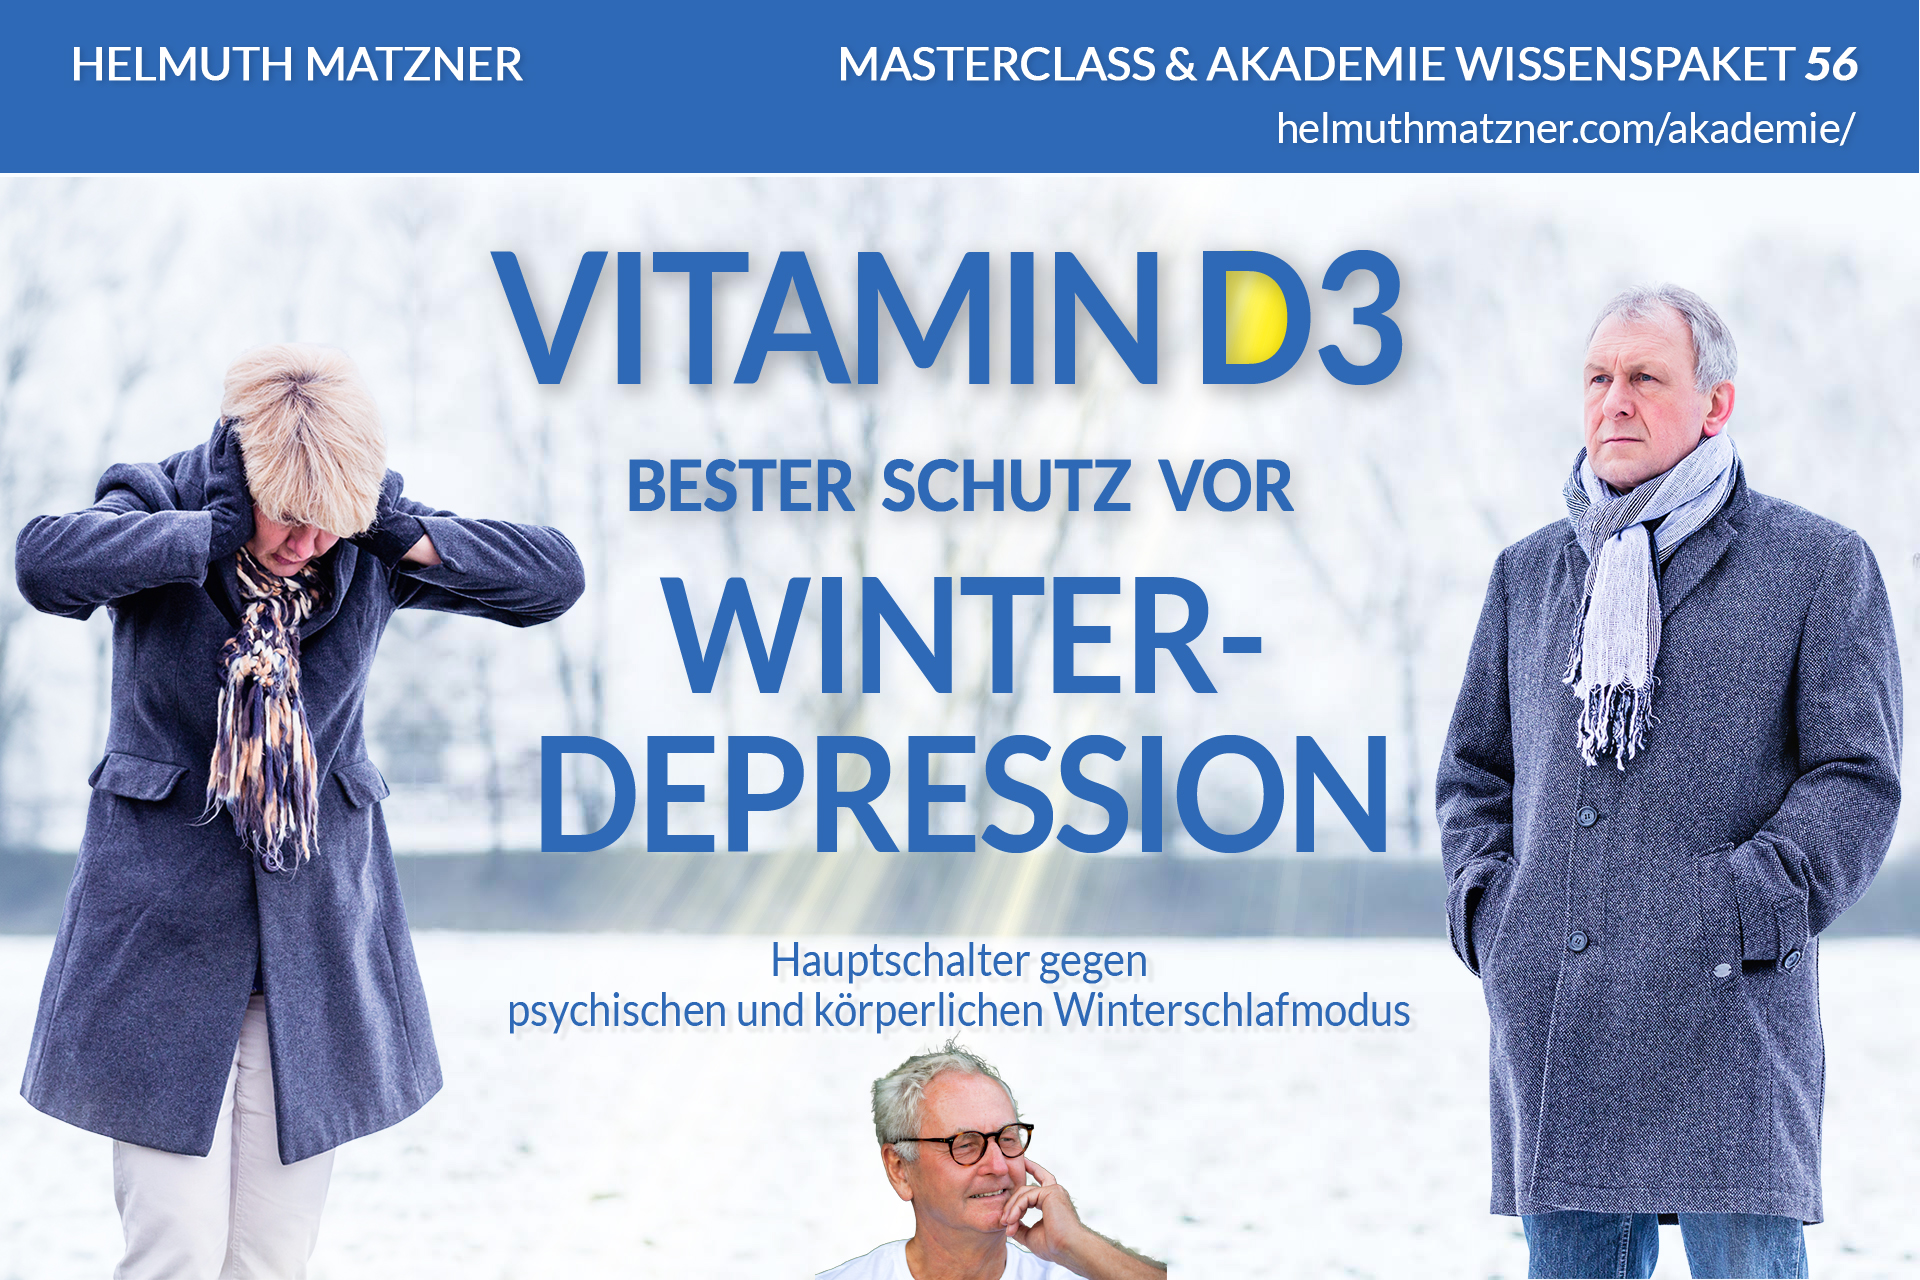 Helmuth Matzner - Masterclass & Akademie Wissenspaket 56 - Vitamin D3 - Winterdepression - AKADEMIE - v01